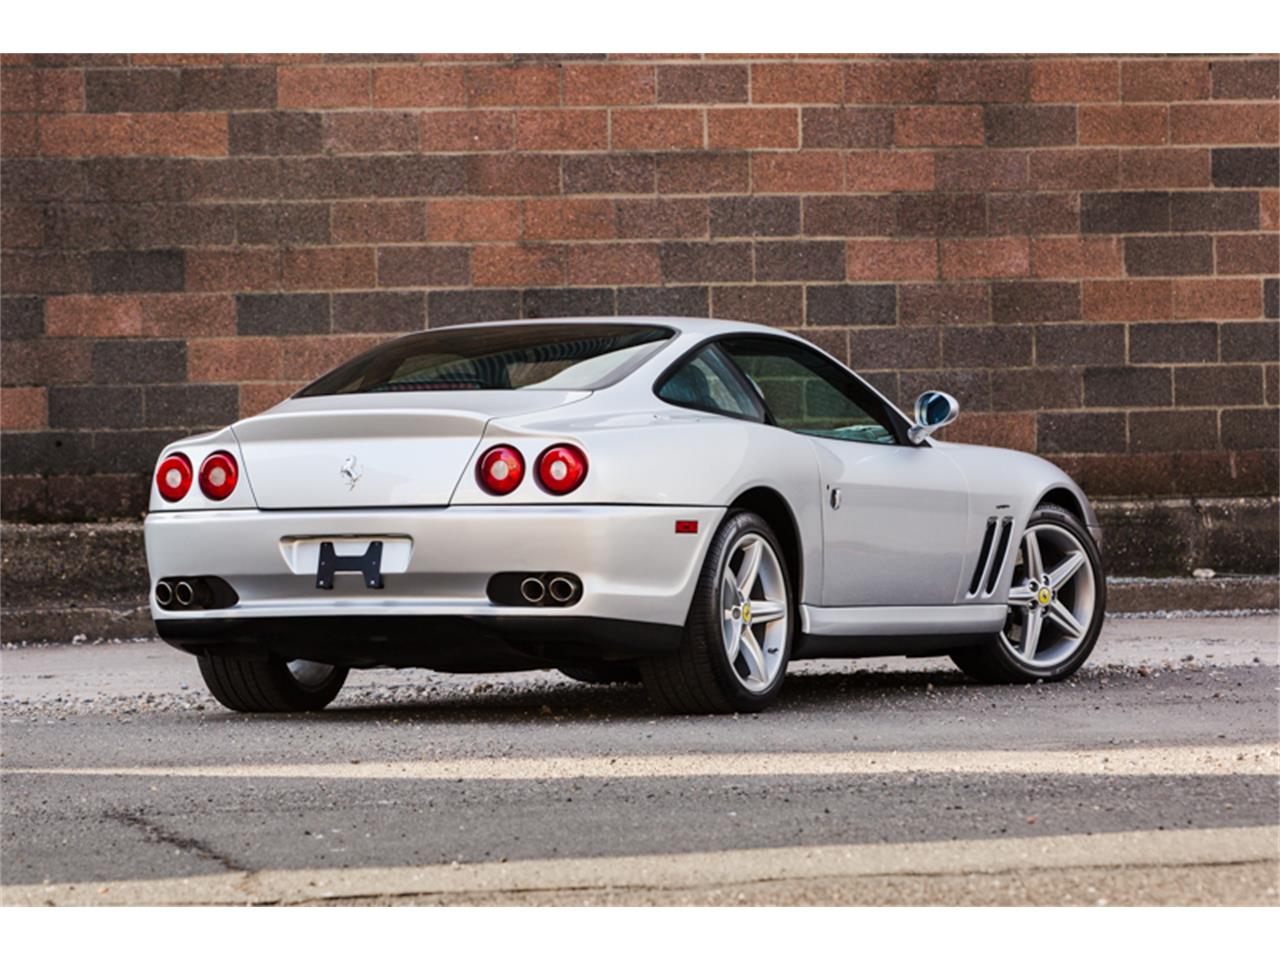 2002 Ferrari 575 Maranello for Sale | ClassicCars.com | CC ...